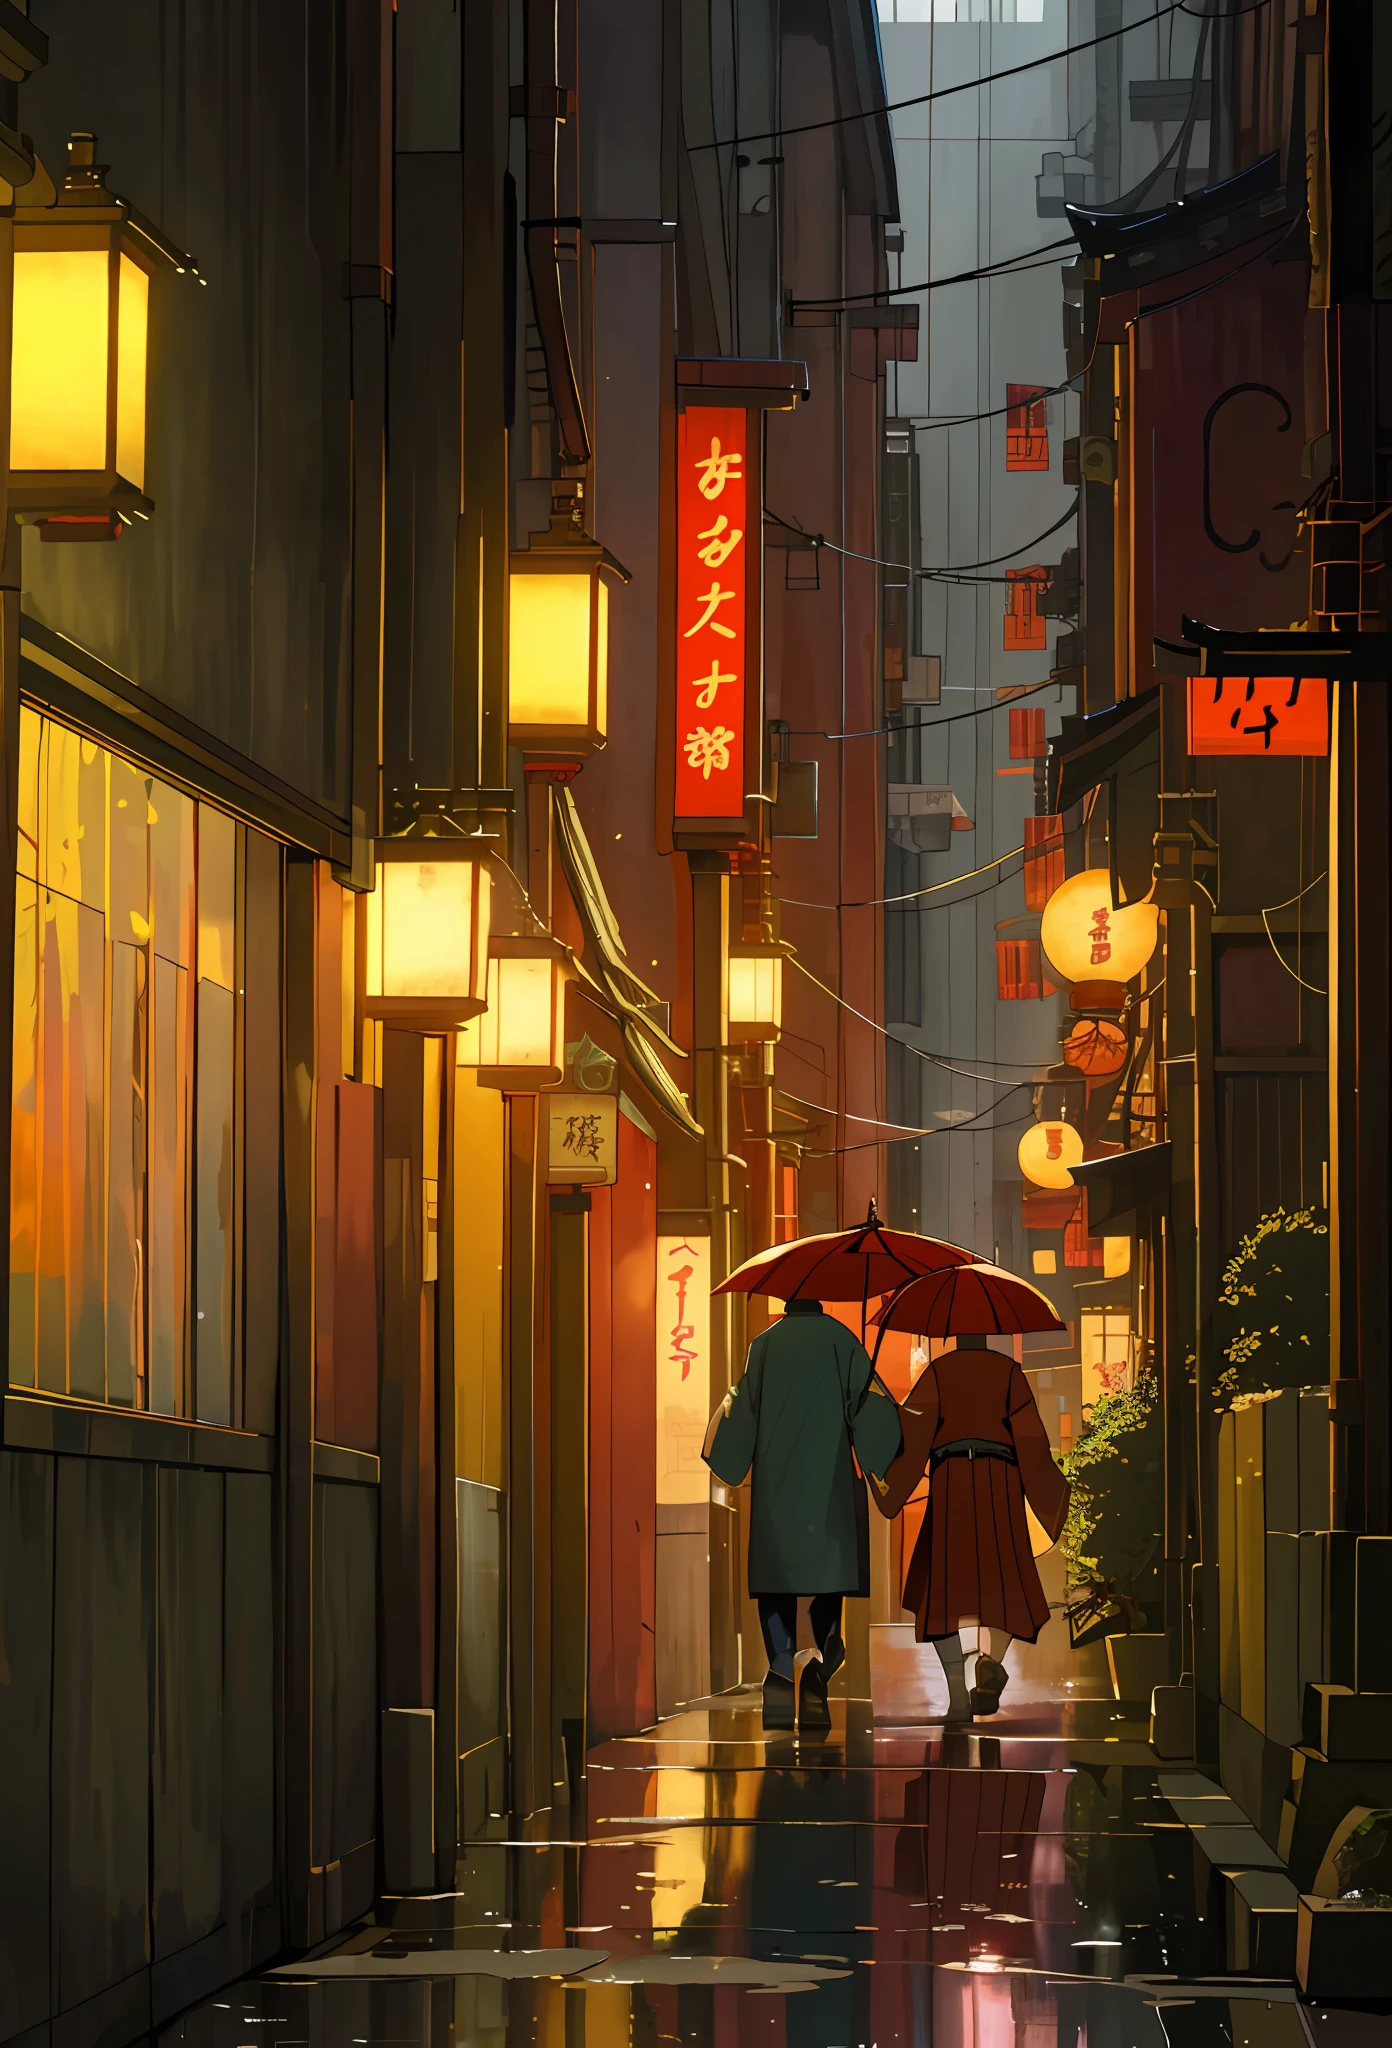 Gente caminando por una calle estrecha llena de tiendas y restaurantes., escena de tokio izakaya, calle japonesa, en las calles de tokio, in a calle tokio, callejón de tokio, en un pueblo japonés por la noche, calle tokio, centro japonés, calles cyberpunk en japón, ciudad japonesa de noche, Callejón tranquilo de Tokio por la noche, en tokio por la noche, Japón de noche, ((Calidad superior, 8k, Obra maestra: 1.3)), lluvioso, ((charco de agua: 1.3)), Futuristic, atardecer